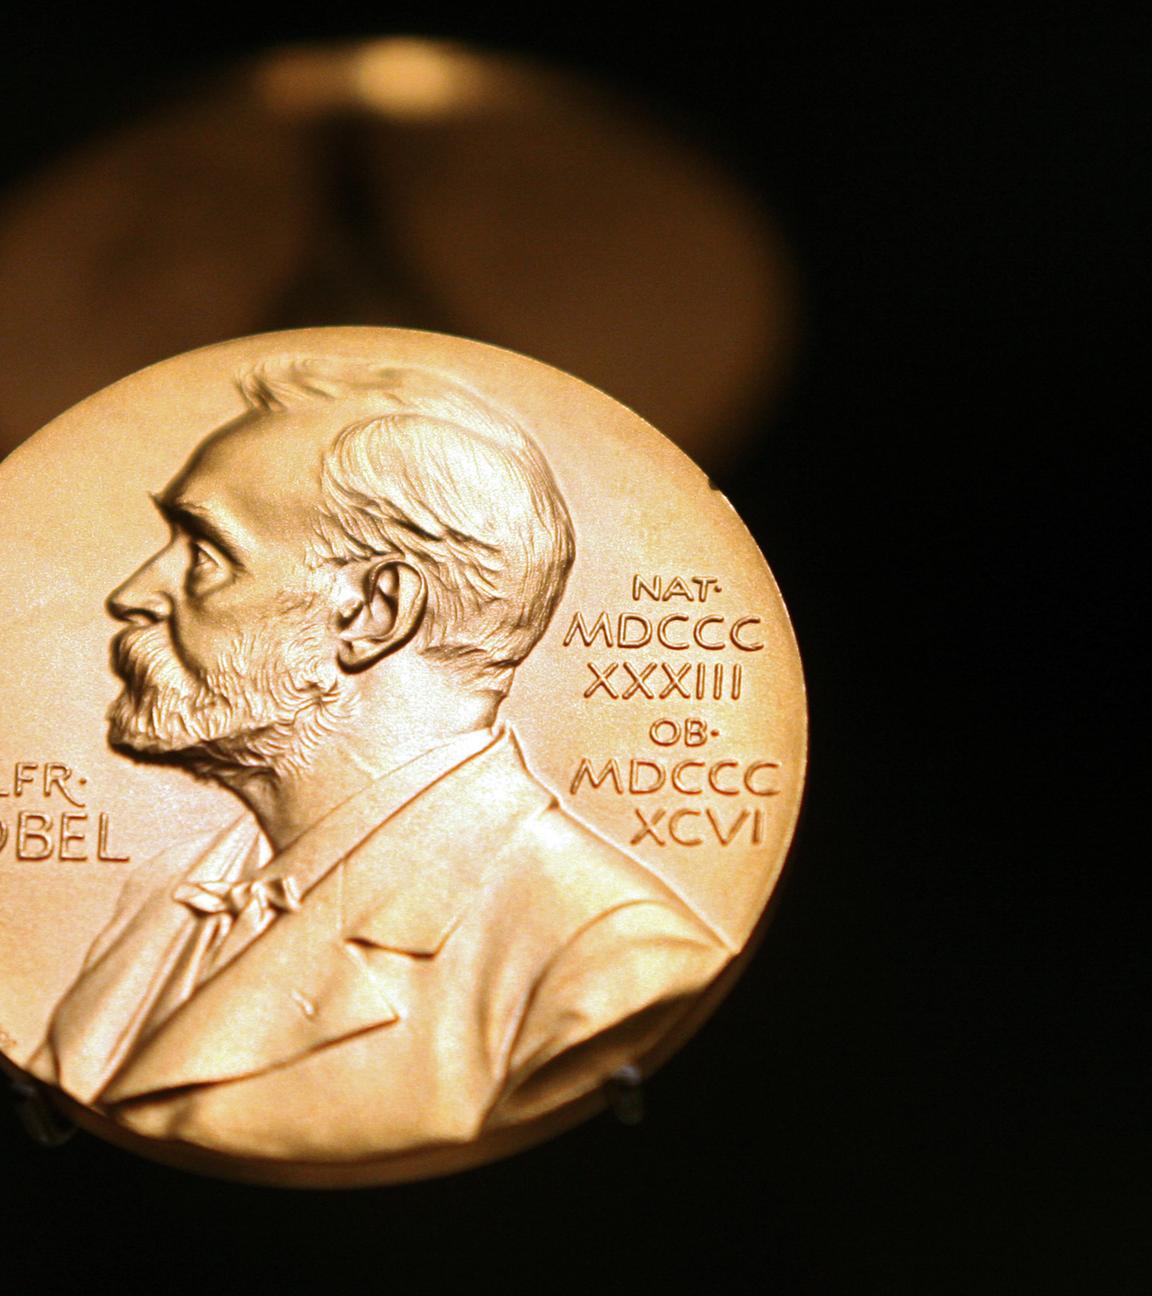 Ansicht auf die Nobelpreismedaille mit Auschrift und Profil Alfred Nobels